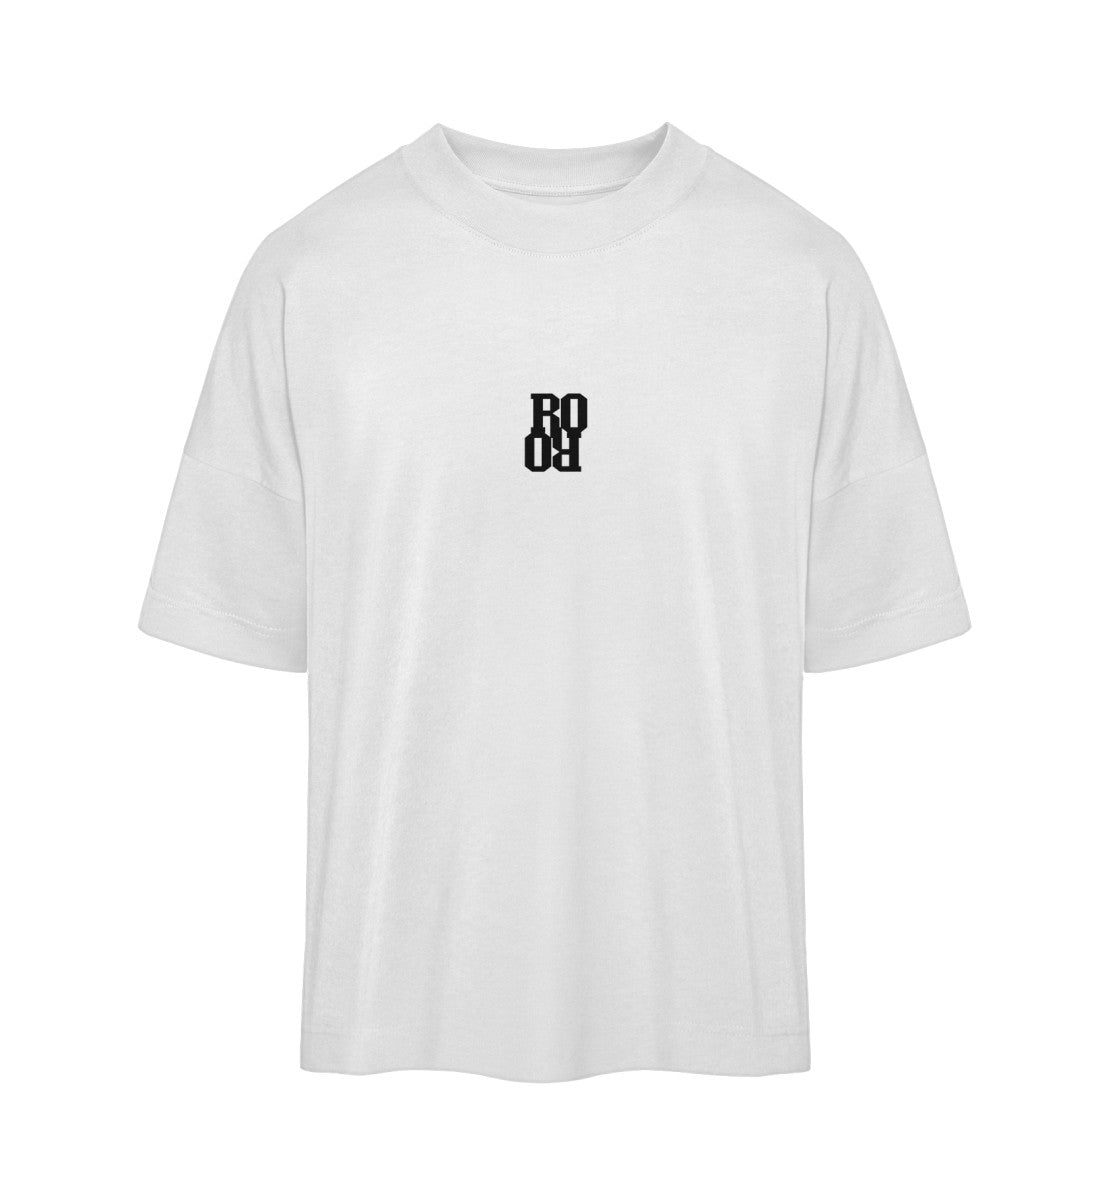 Weißes T-Shirt Unisex Oversize Fit für Frauen und Männer bedruckt mit dem Design der Roger Rockawoo Kollektion Surf shredding culture